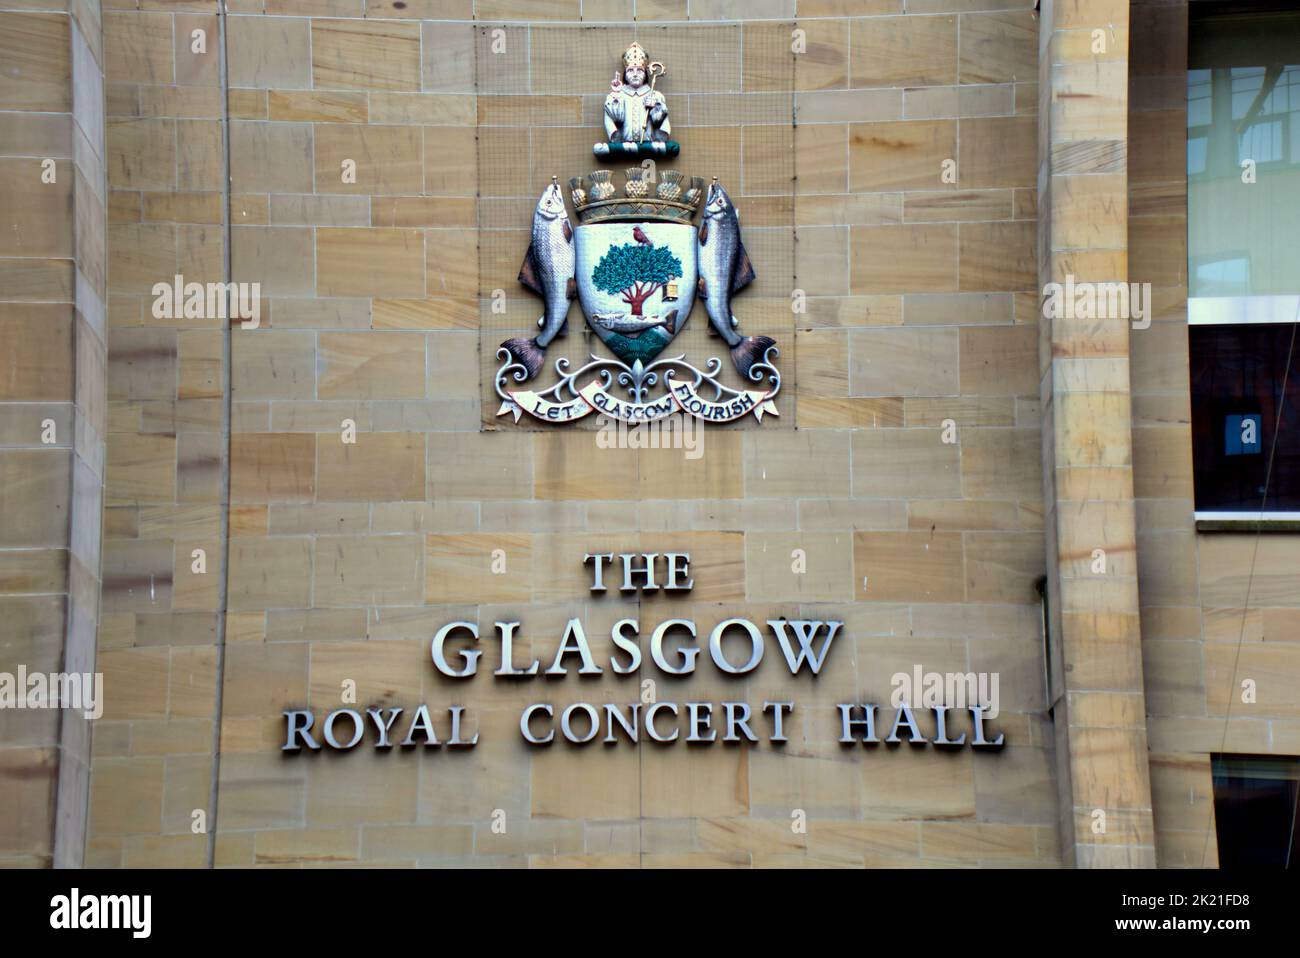 Logo de la salle de concert royale de Glasgow blason protégé des pigeons par Wire Glasgow, Écosse, Royaume-Uni Banque D'Images